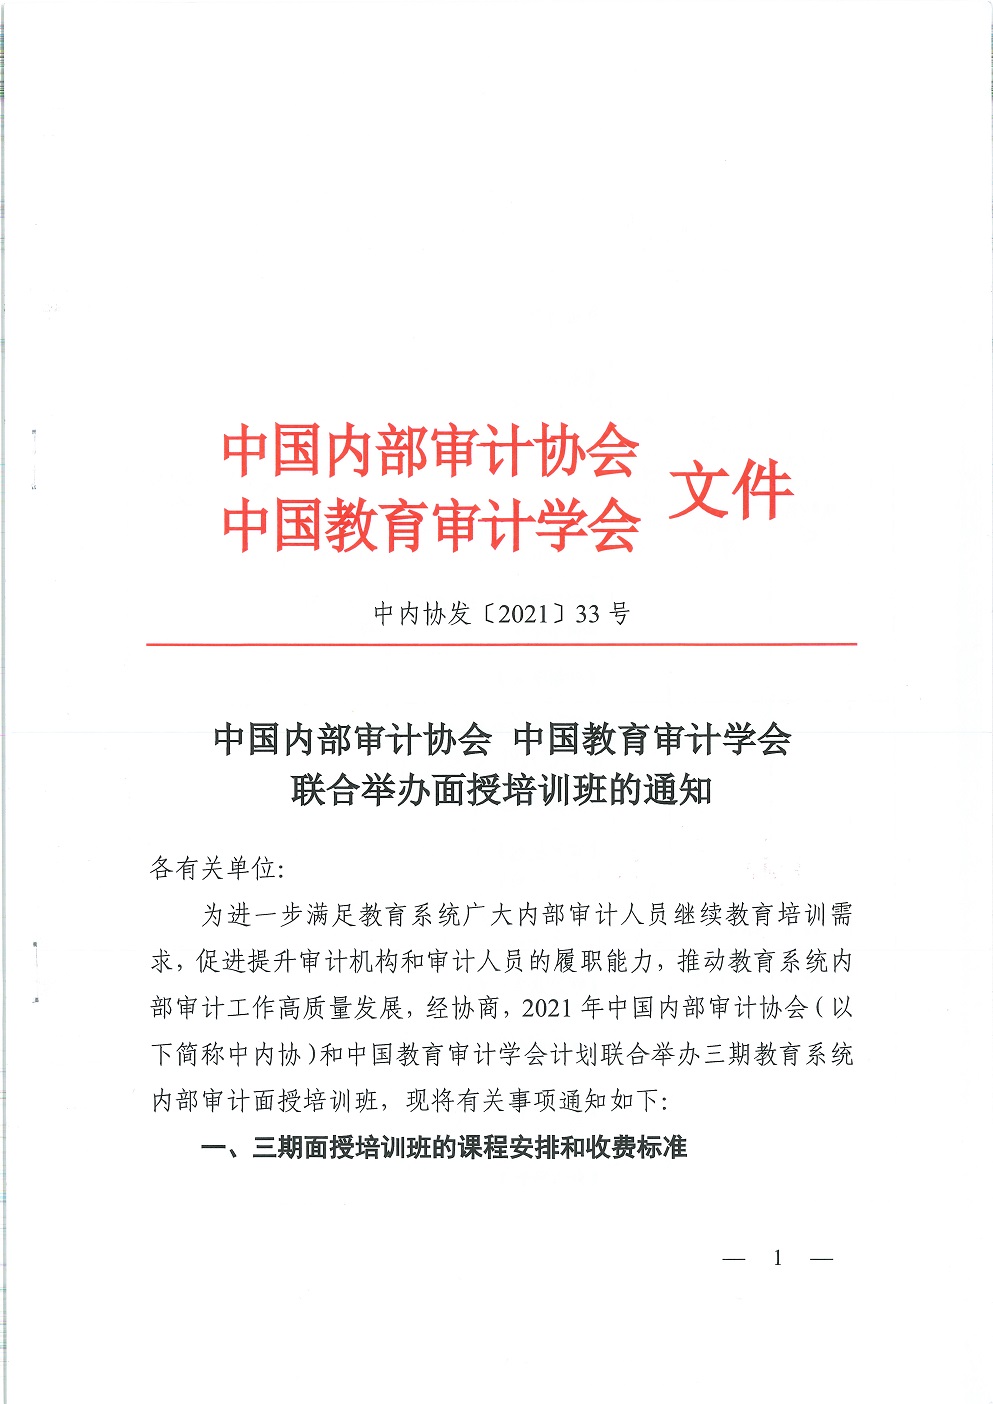 中教审通[2021]6号——关于与中国内部审计协会联合举办内部审计面授培训班的通知_页面_2.jpg